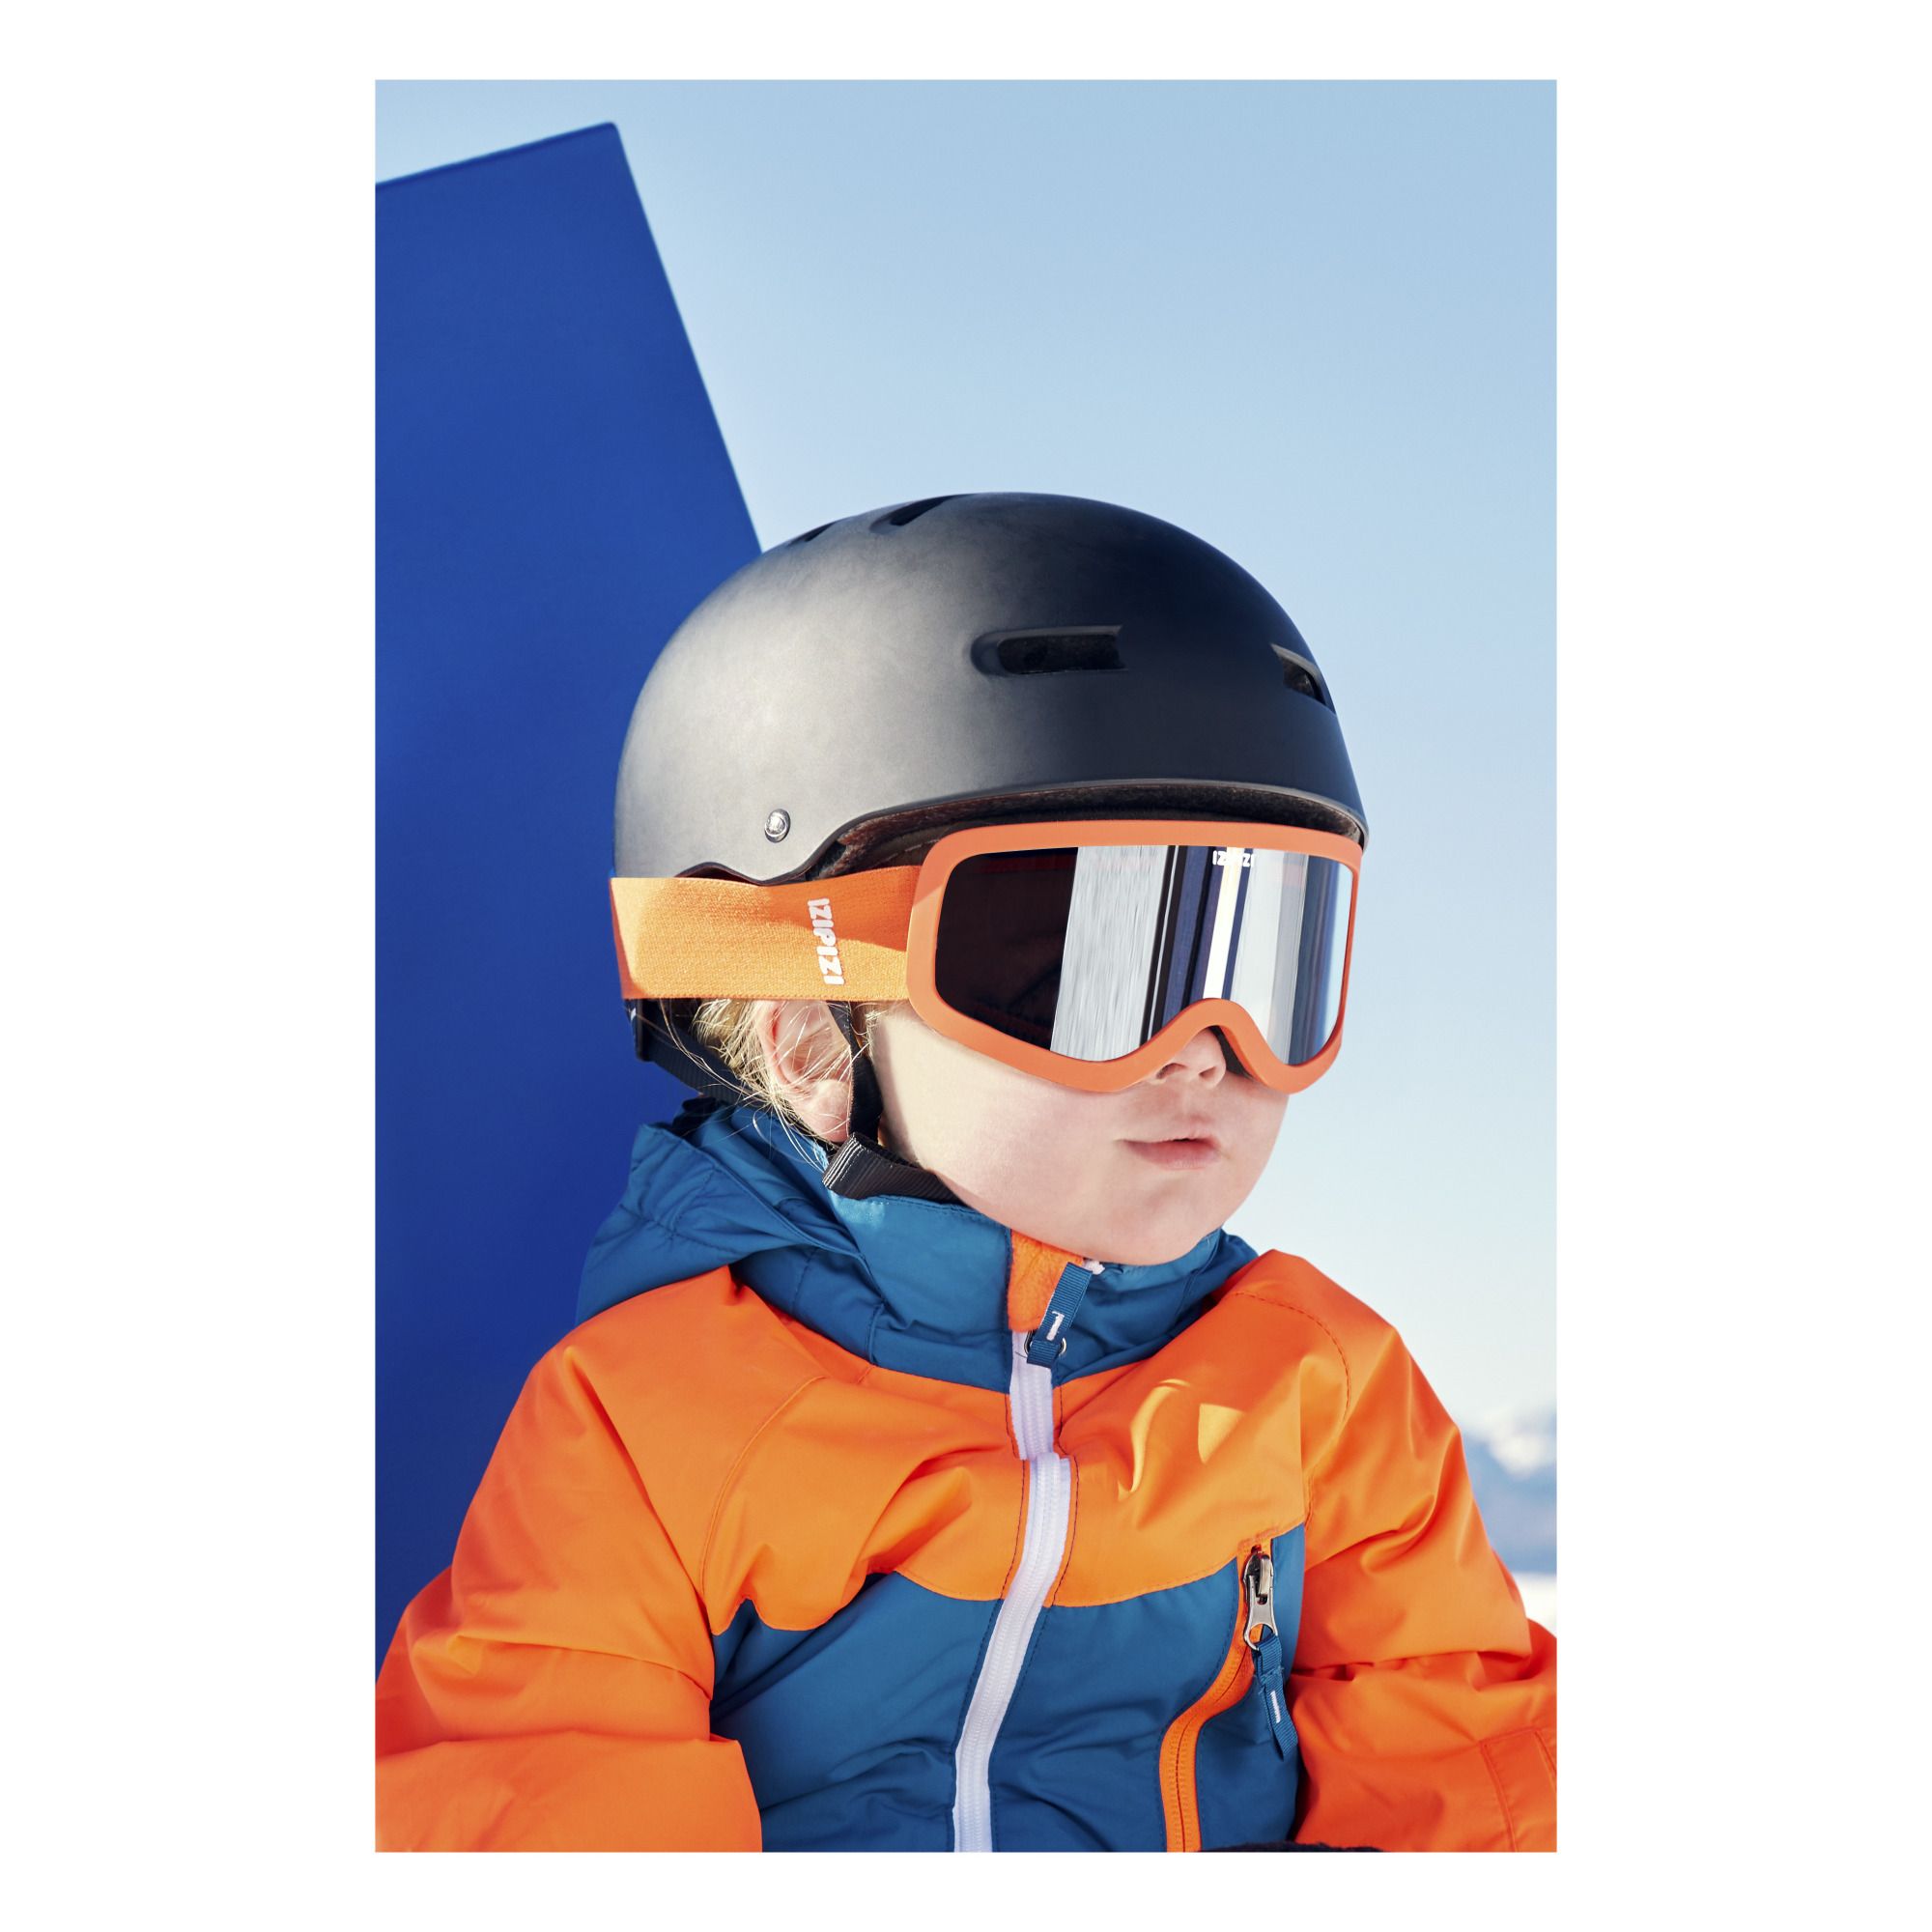 IZIPIZI - Masque de Ski Junior - Orange